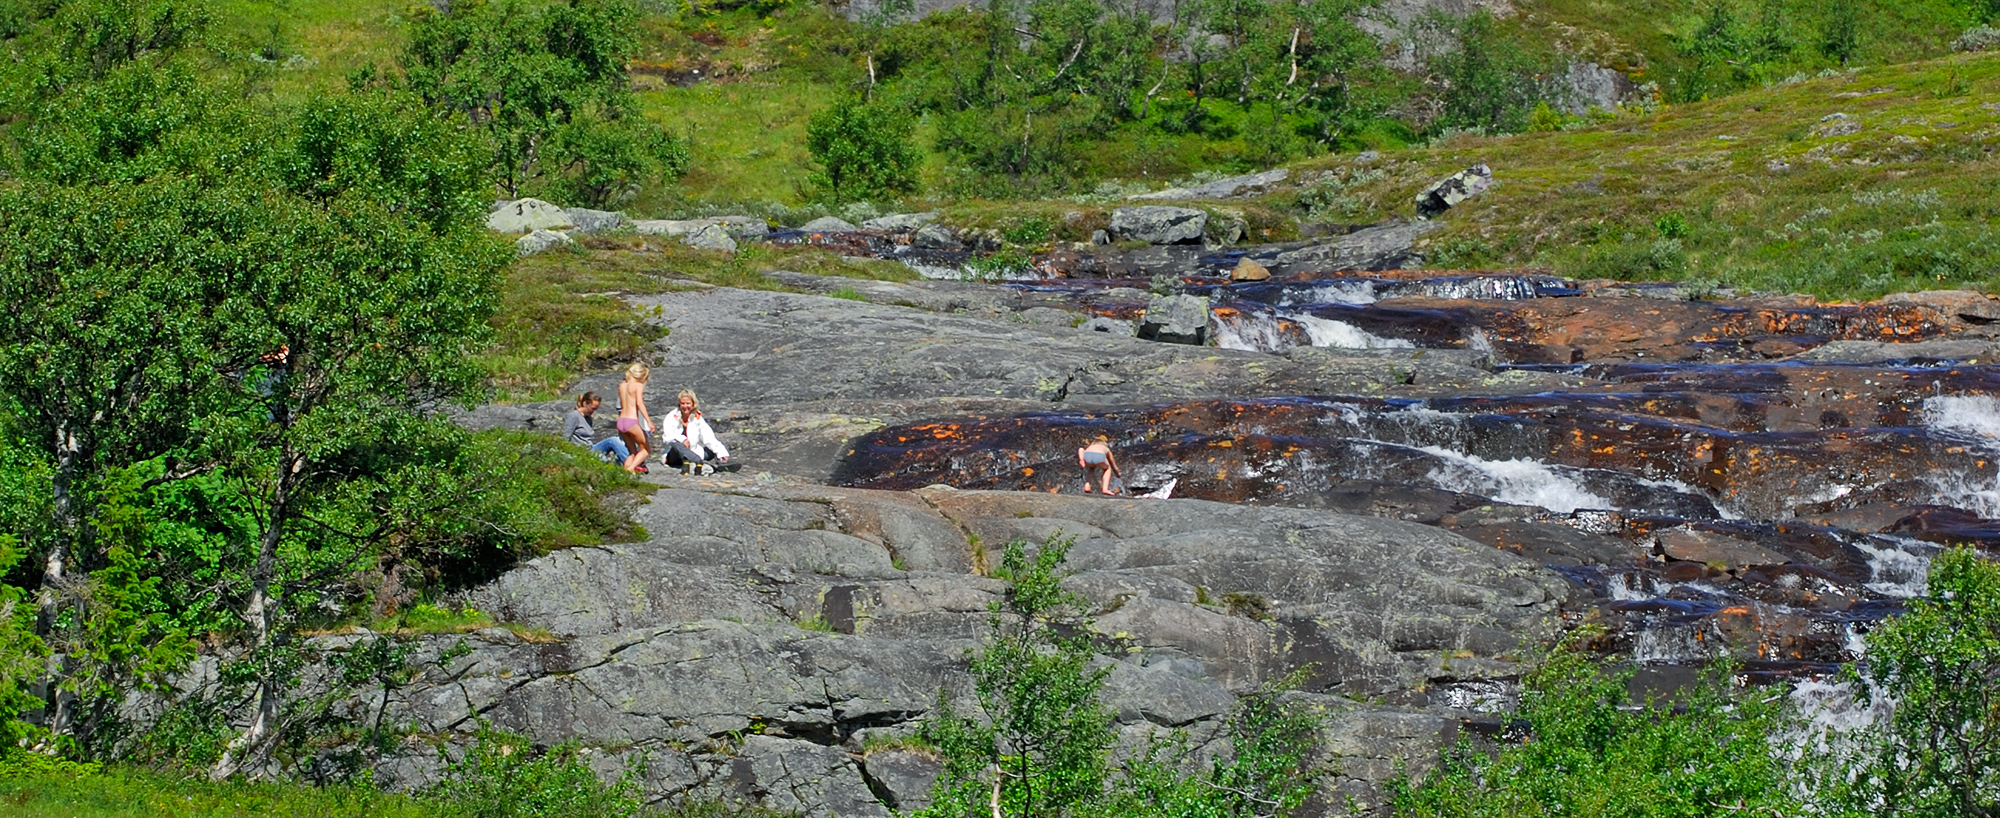 Bad i en av fjällbäckarna längs Björnbacksturen. En fjällupplevelse i världsklass i Södra Årefjällen.